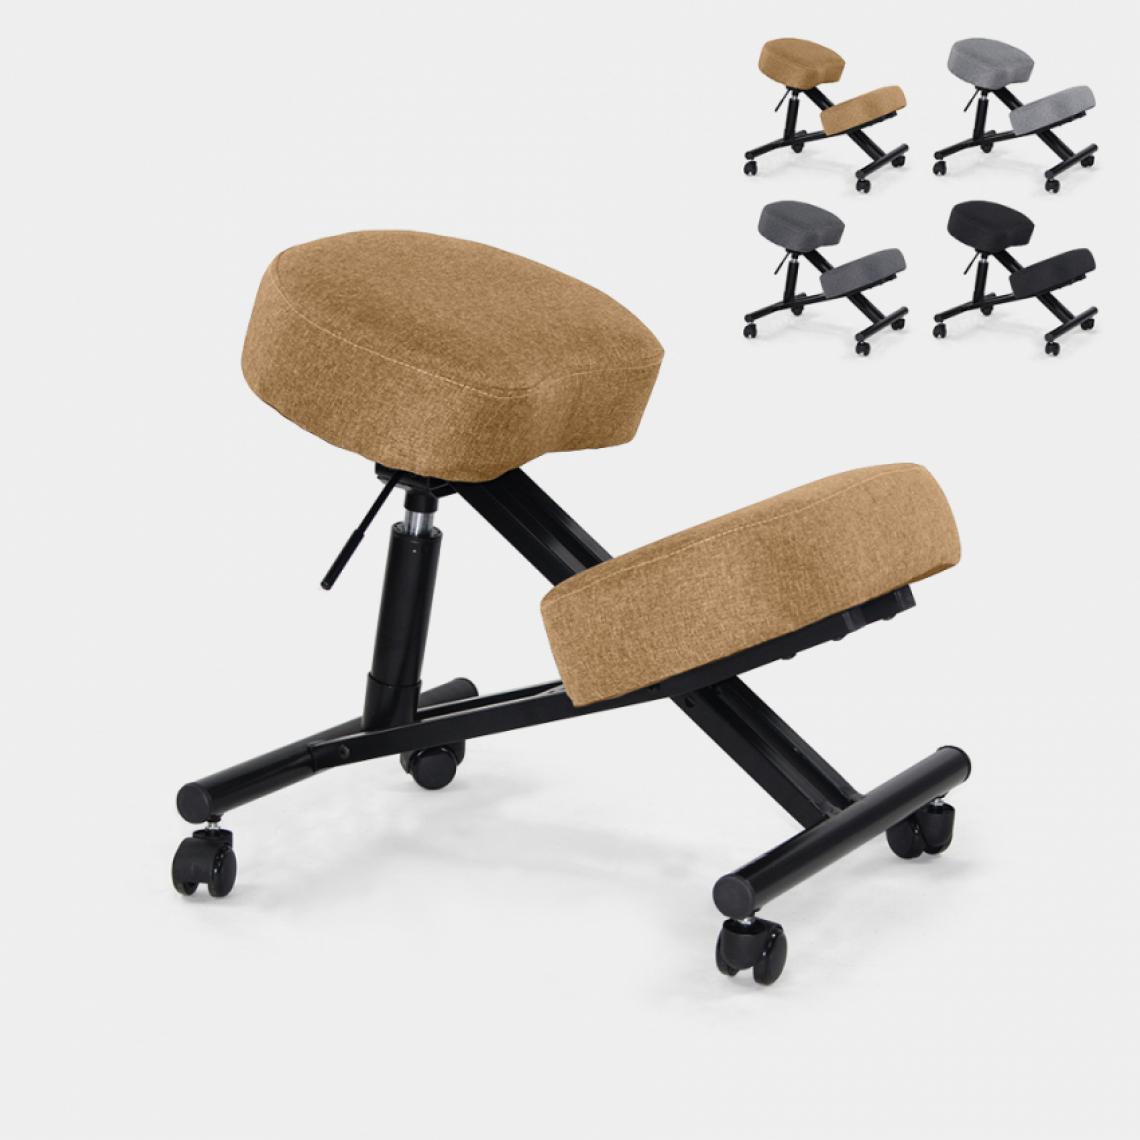 Bodyline - Healt And Massage - Chaise orthopédique suédoise ergonomique en tissu et en métal Balance Lux, Couleur: Beige - Chaises